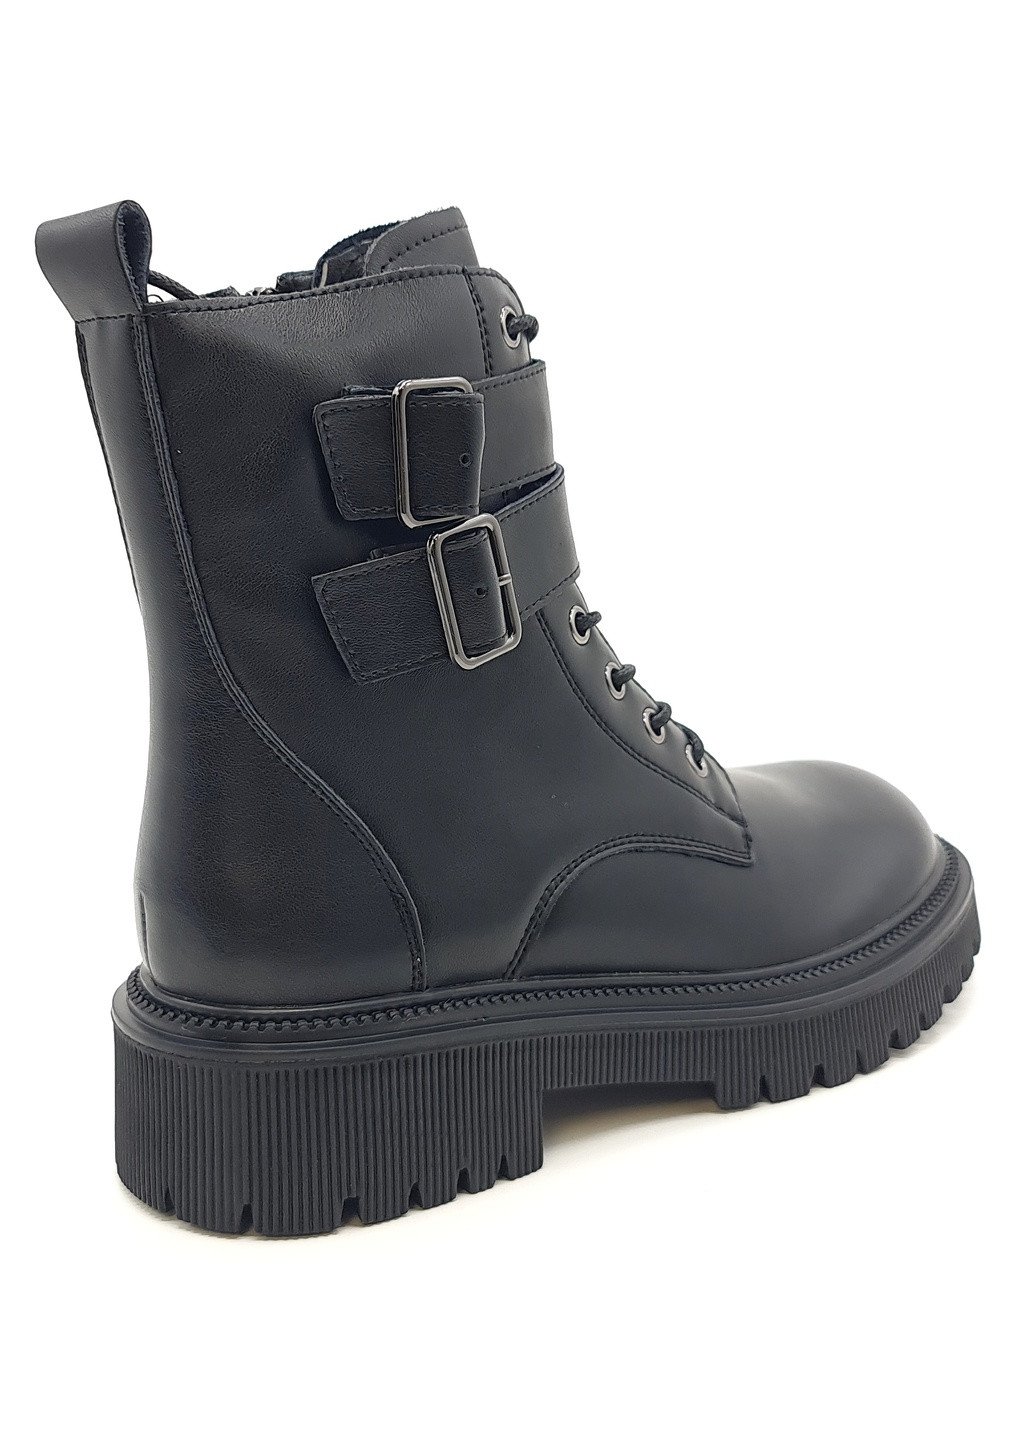 Осенние женские ботинки черные кожаные ya-10-5 23,5 см (р) Yalasou